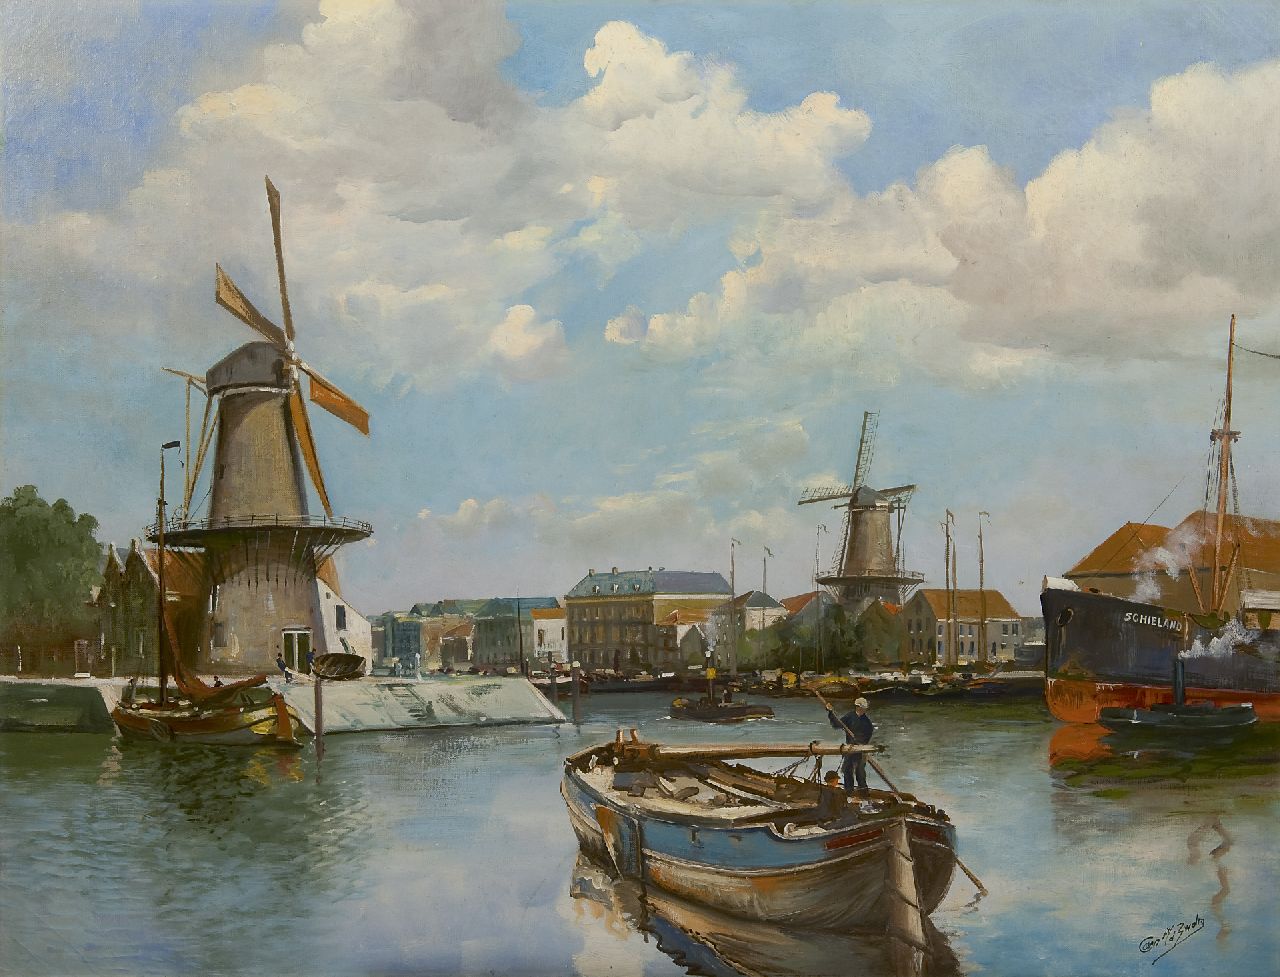 Cor van der Zwalm | Gezicht op Delfshaven met de molens De Distilleerketel en De Waakzaamheid, olieverf op doek, 74,9 x 98,4 cm, gesigneerd r.o.